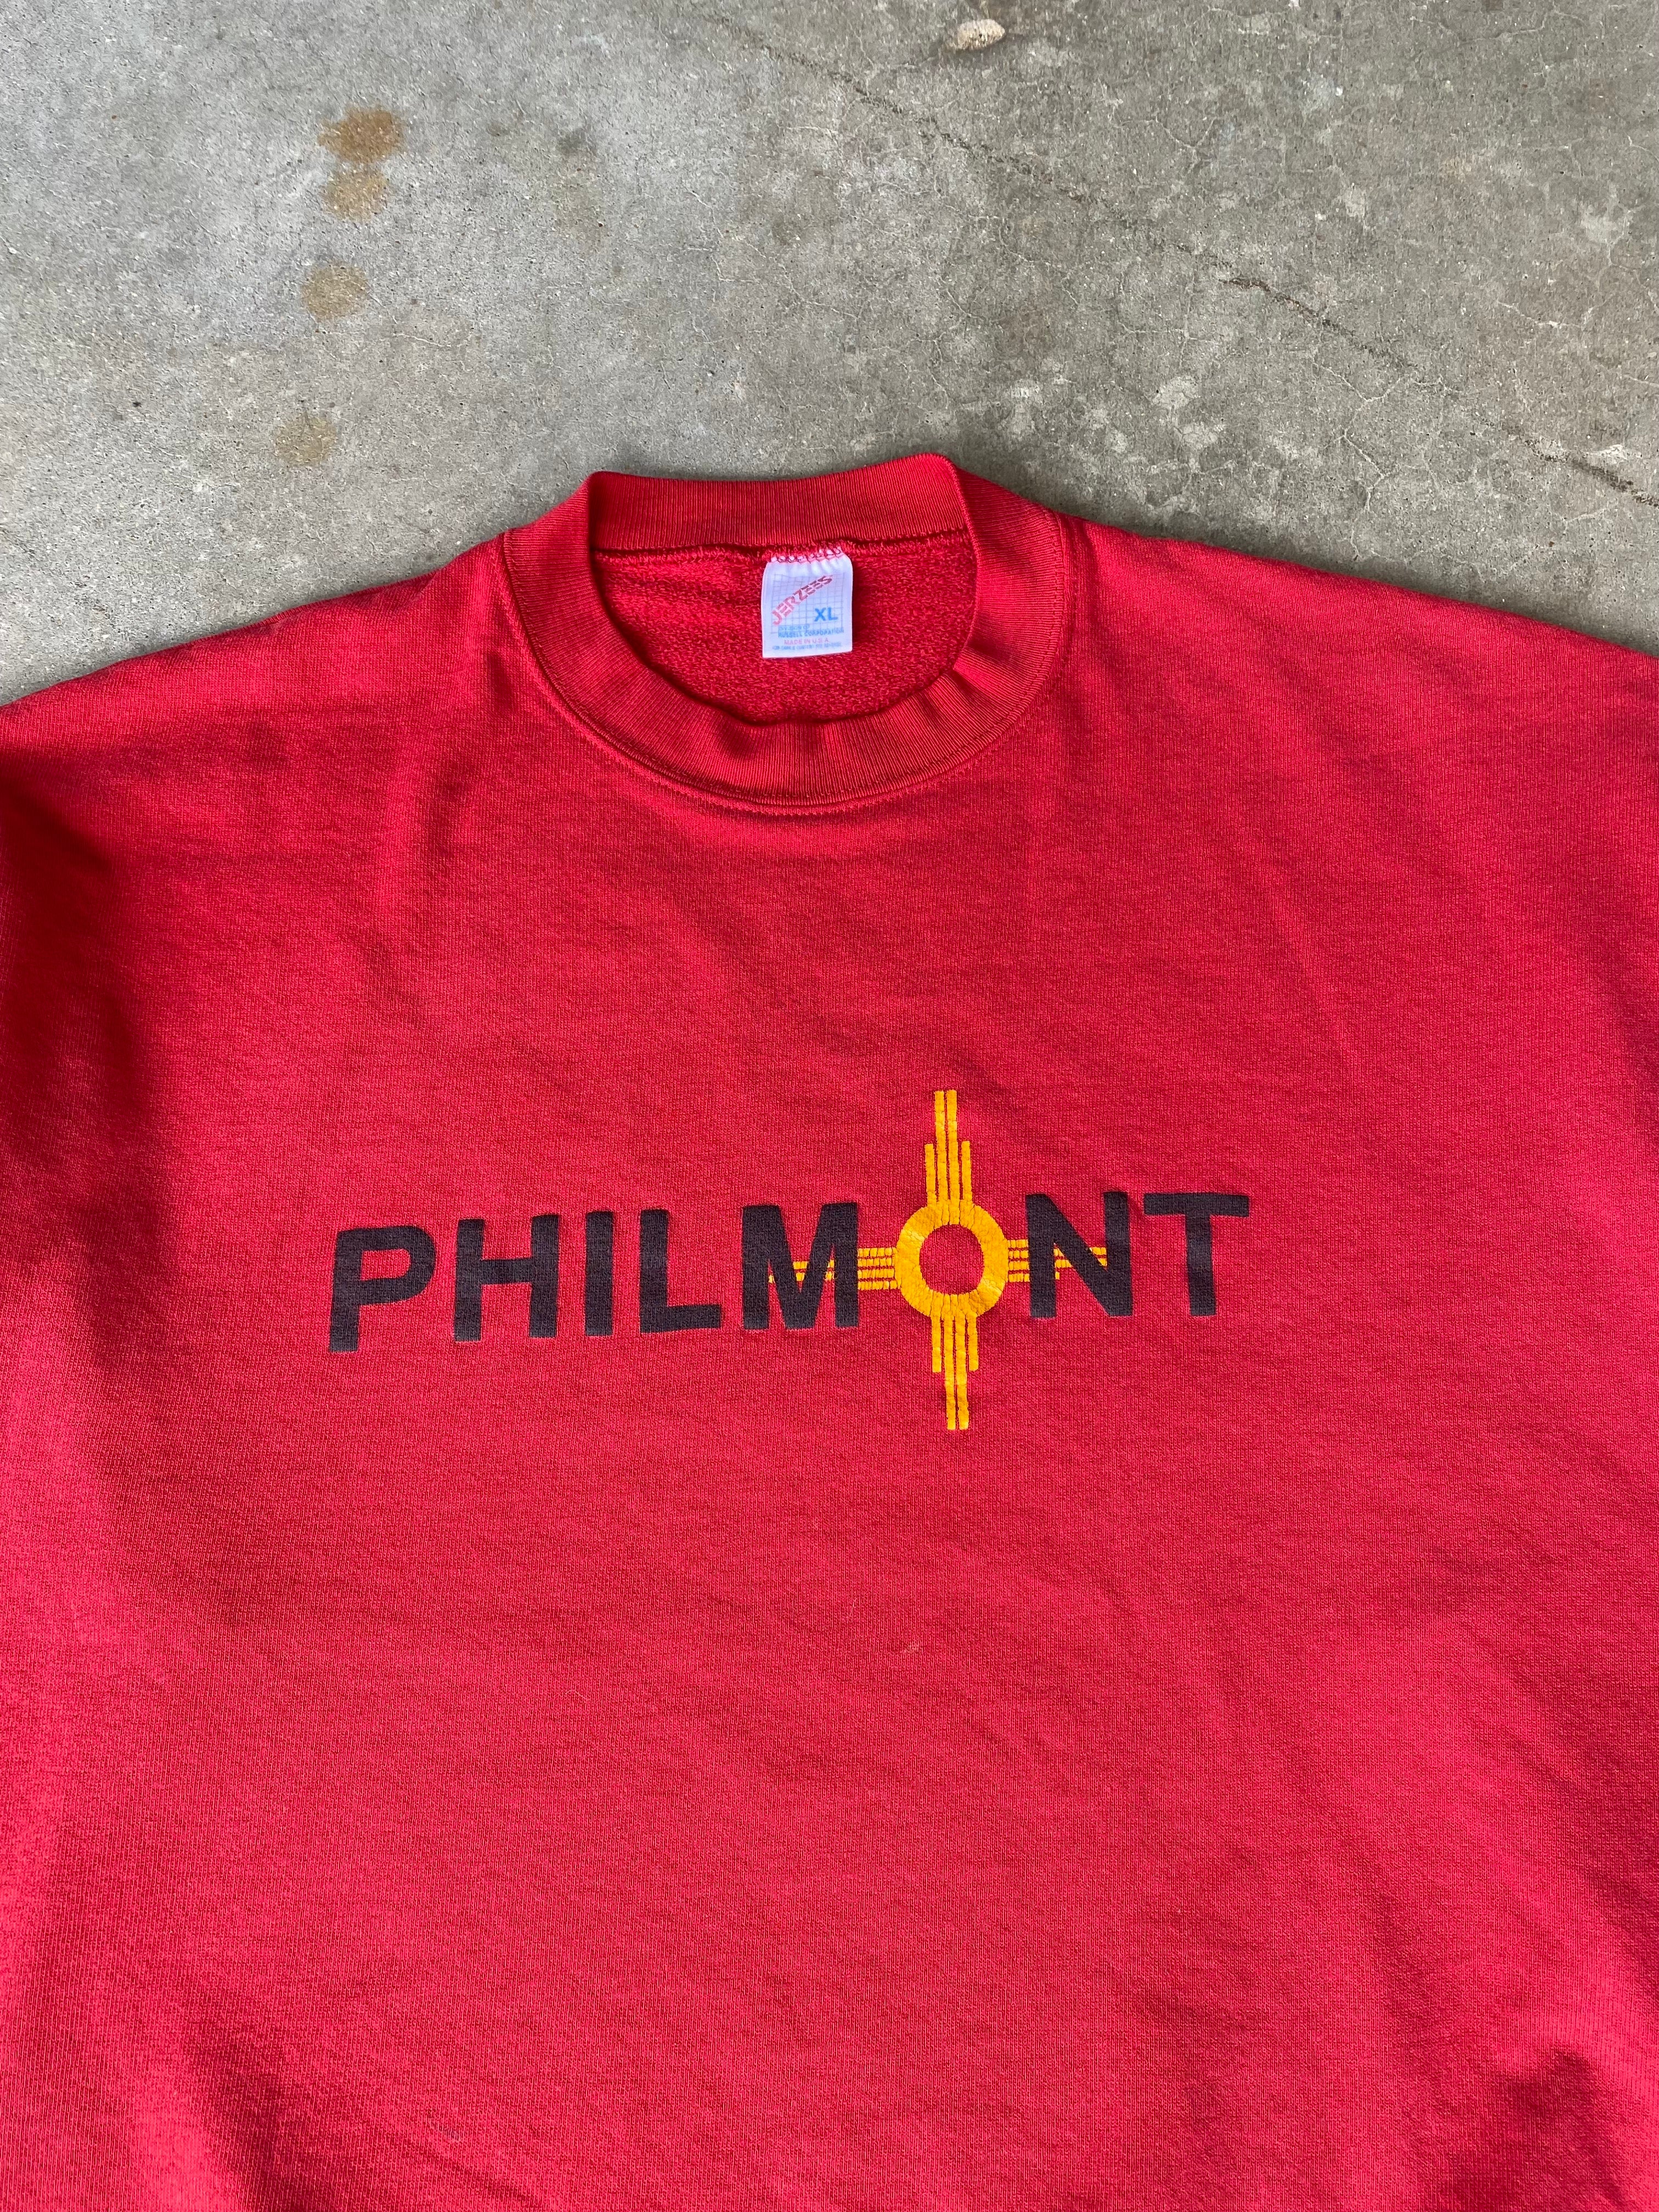 1990s Philmont Scout Ranch Crewneck (XL)